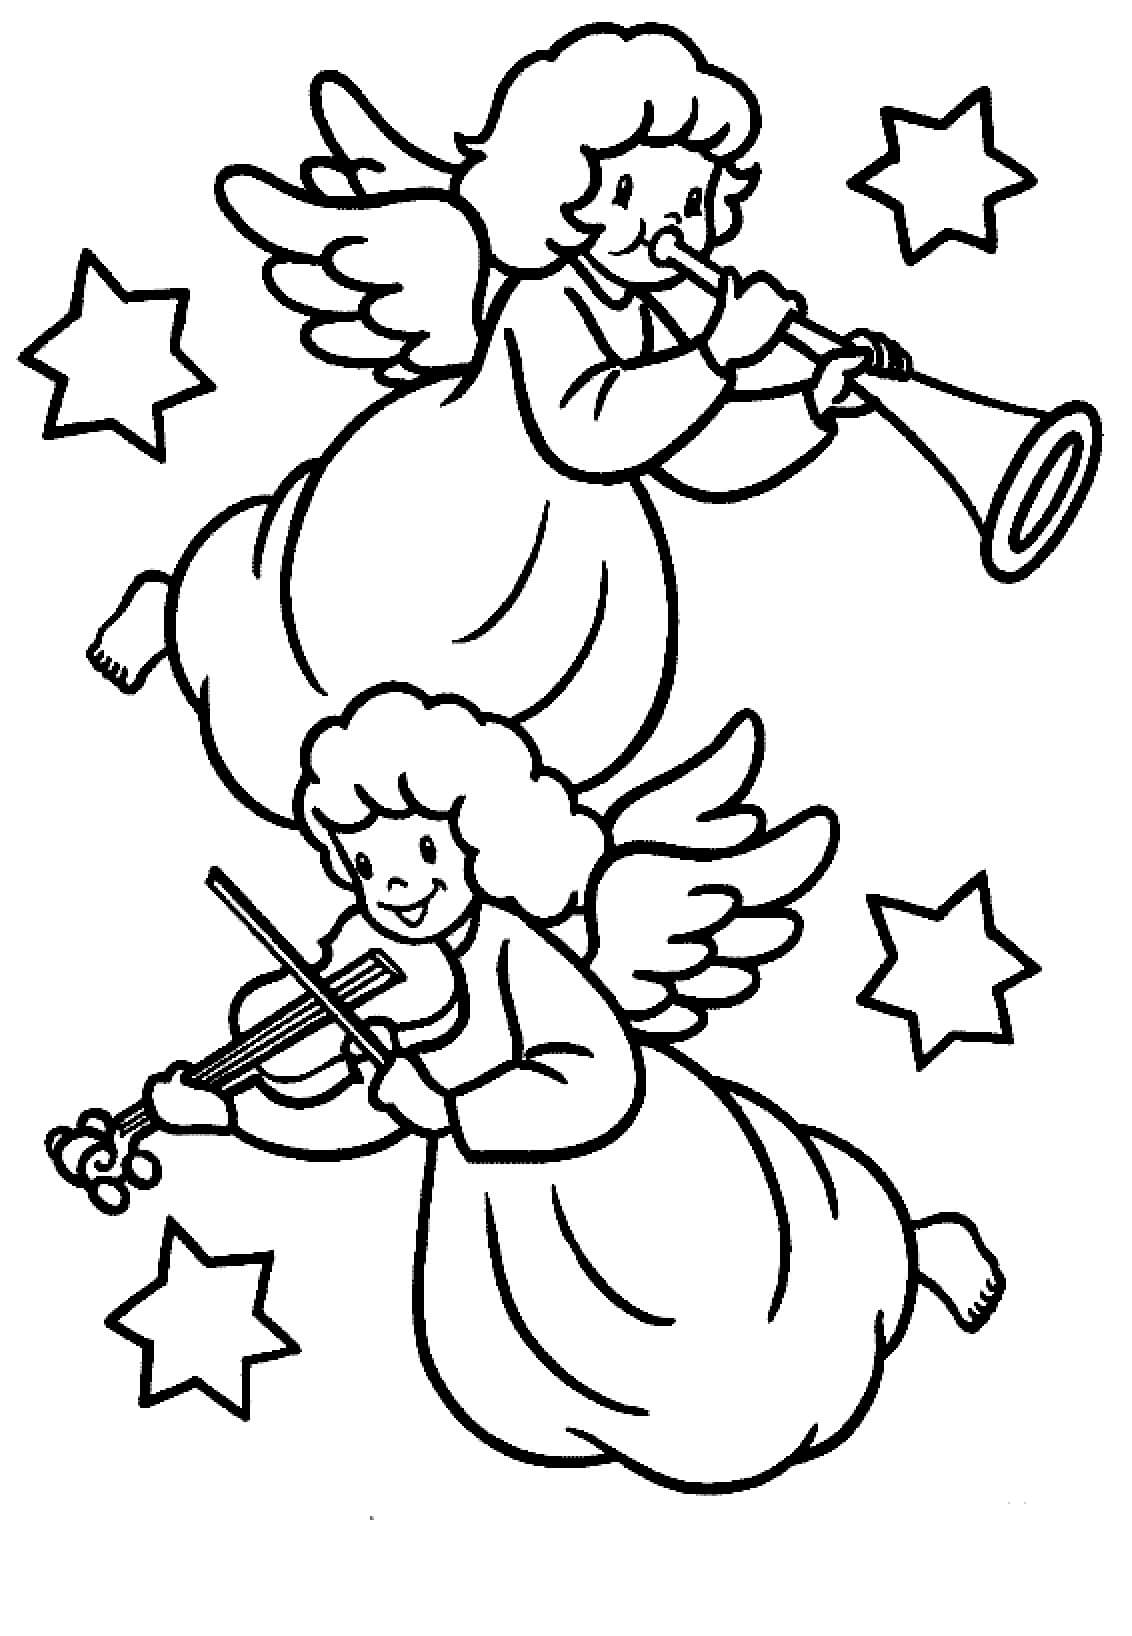 트럼펫과 바이올린을 연주하는 두 명의 크리스마스 천사